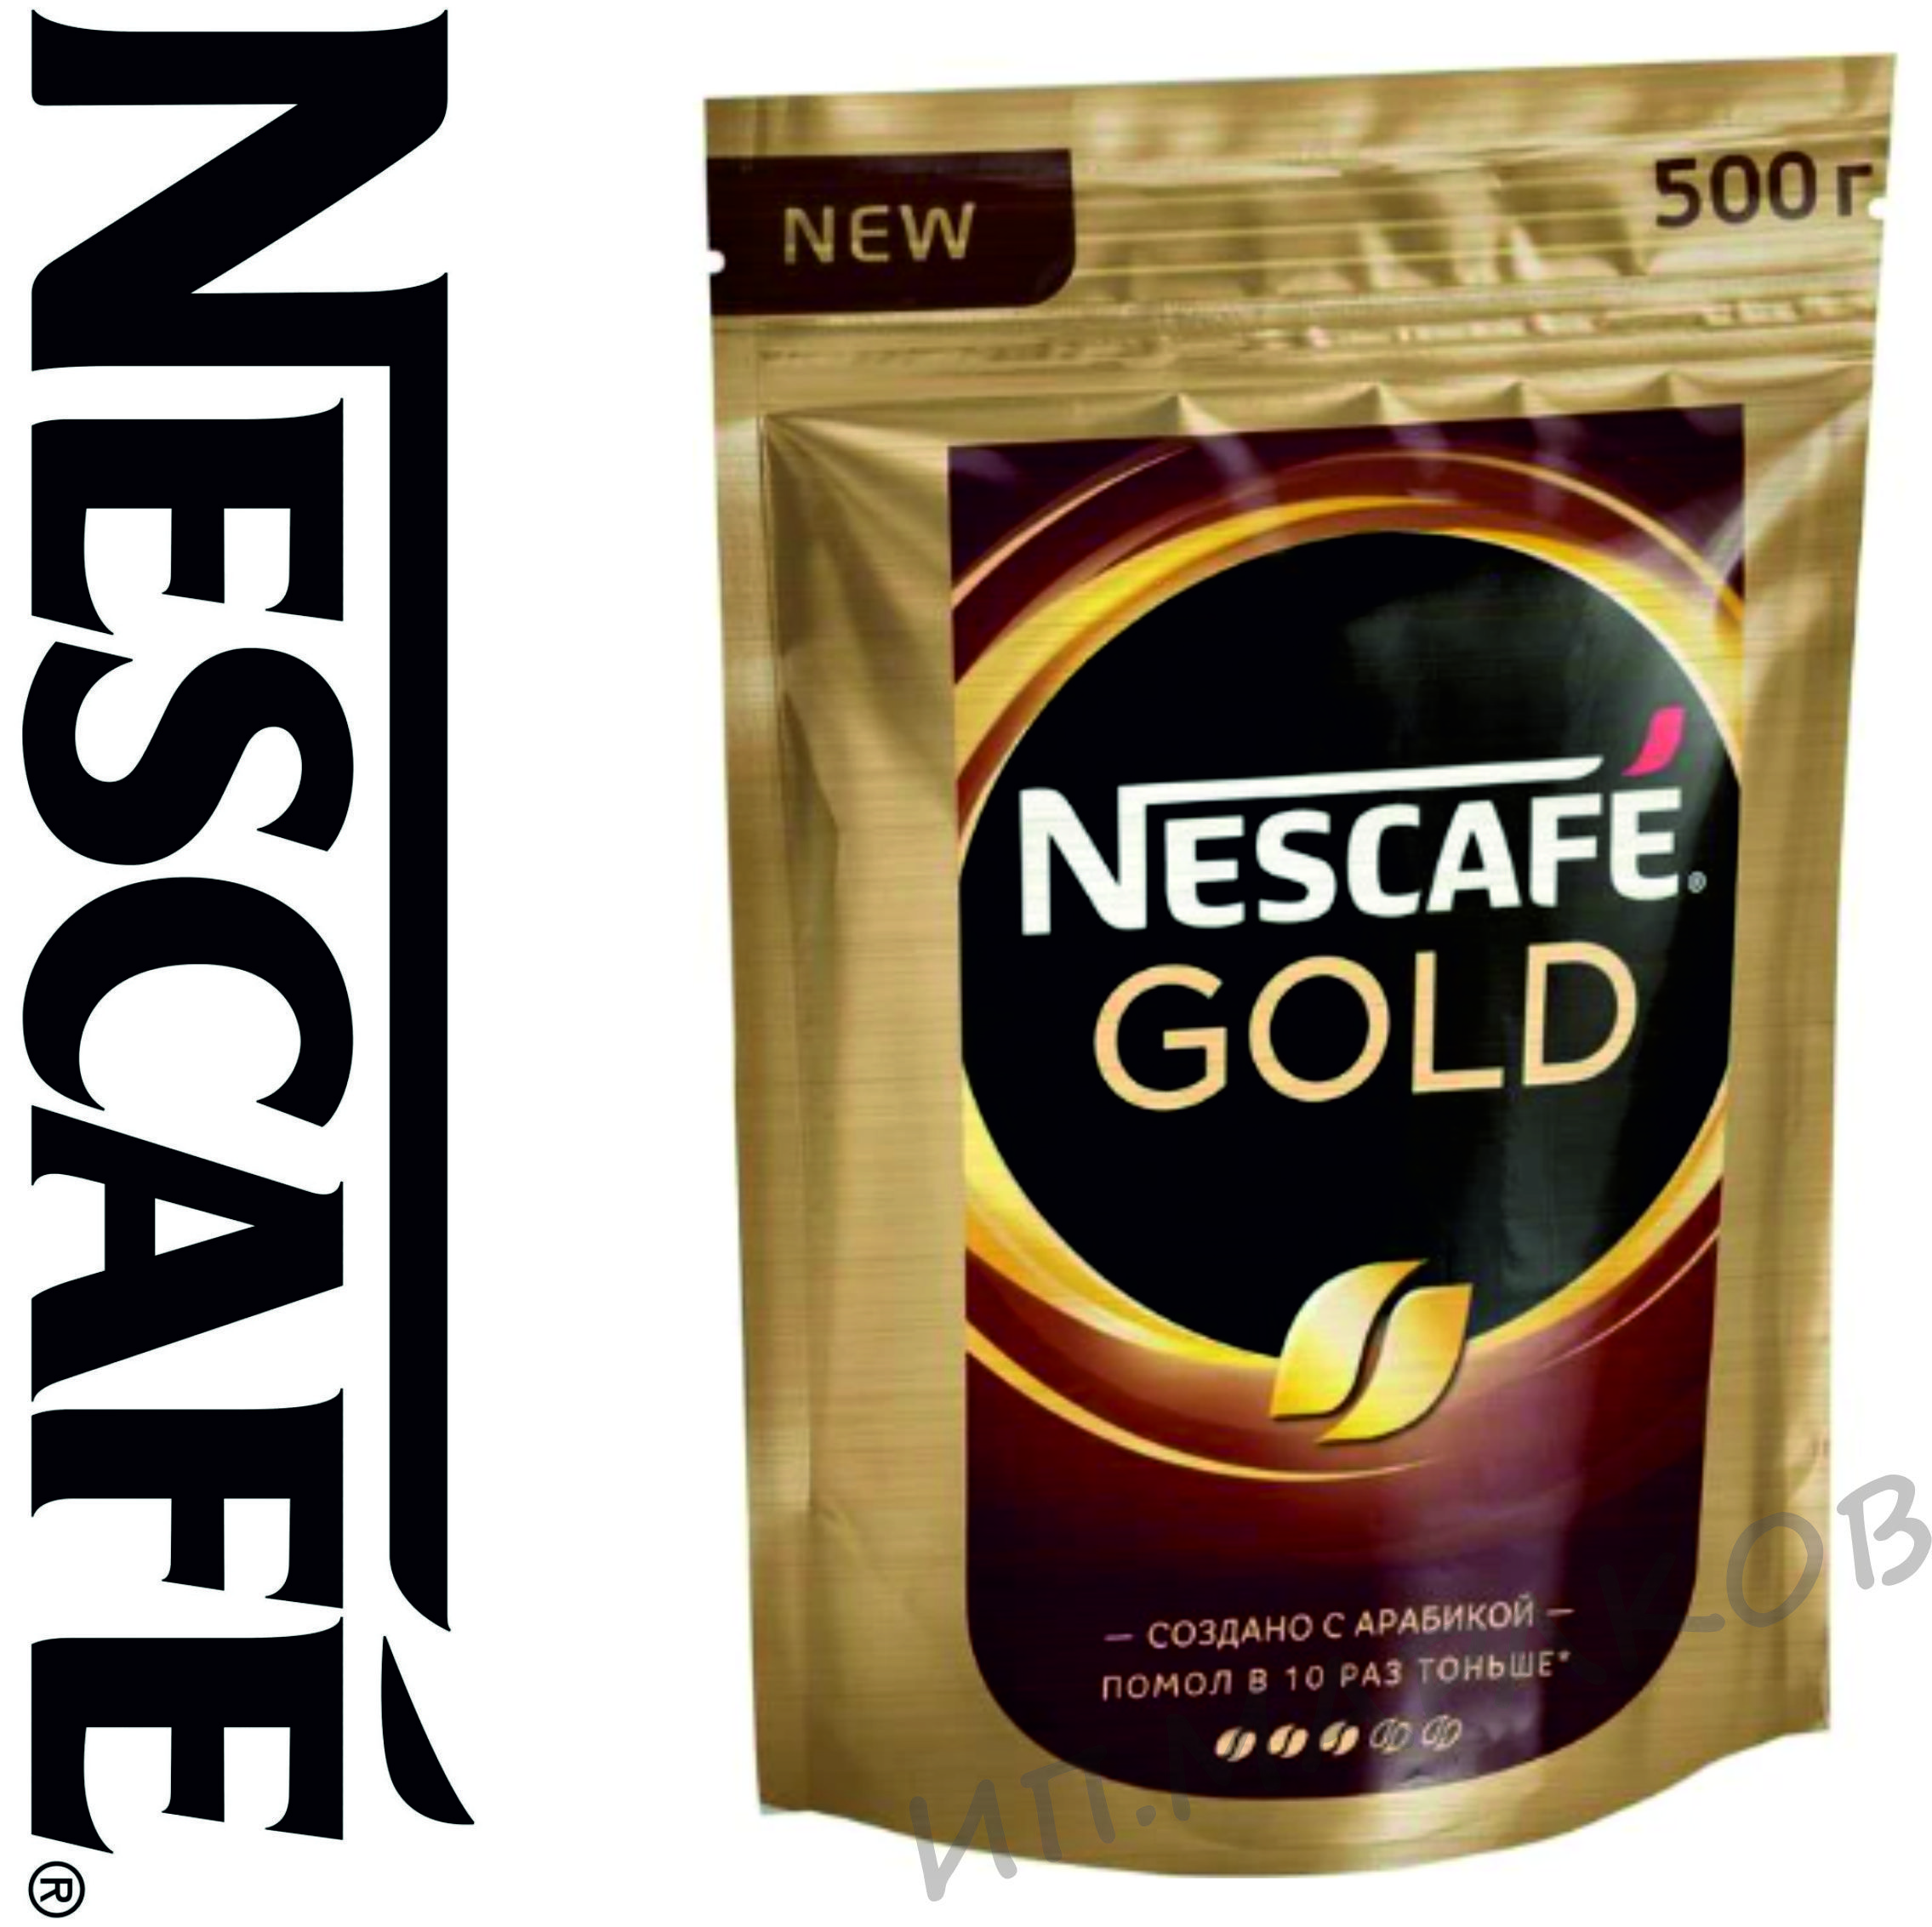 Кофе Нескафе Голд пакет 320г оборотная сторона упаковки. Нескафе Голд субл 2 гр. Нескафе Голд субл Жар мол 190г. Кофе nescafe gold 500